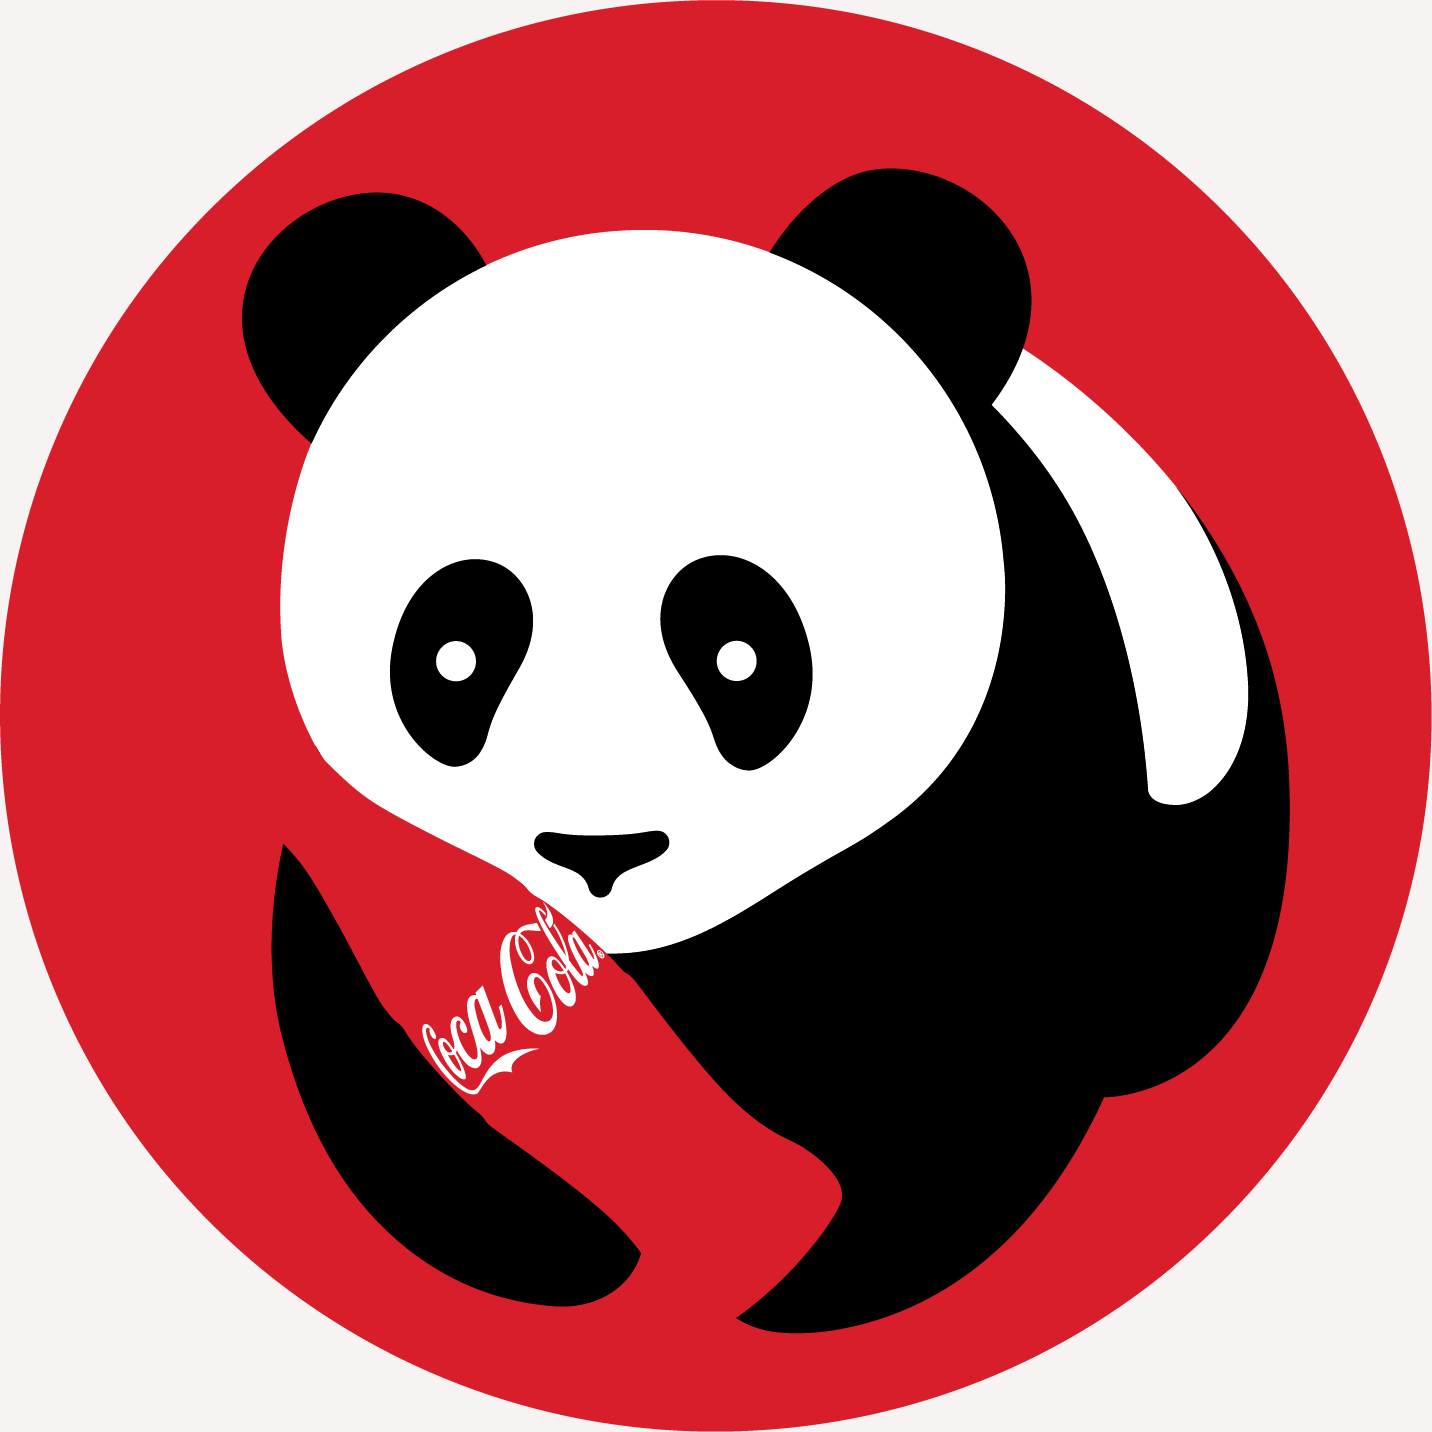 Coca-Cola x Panda Express